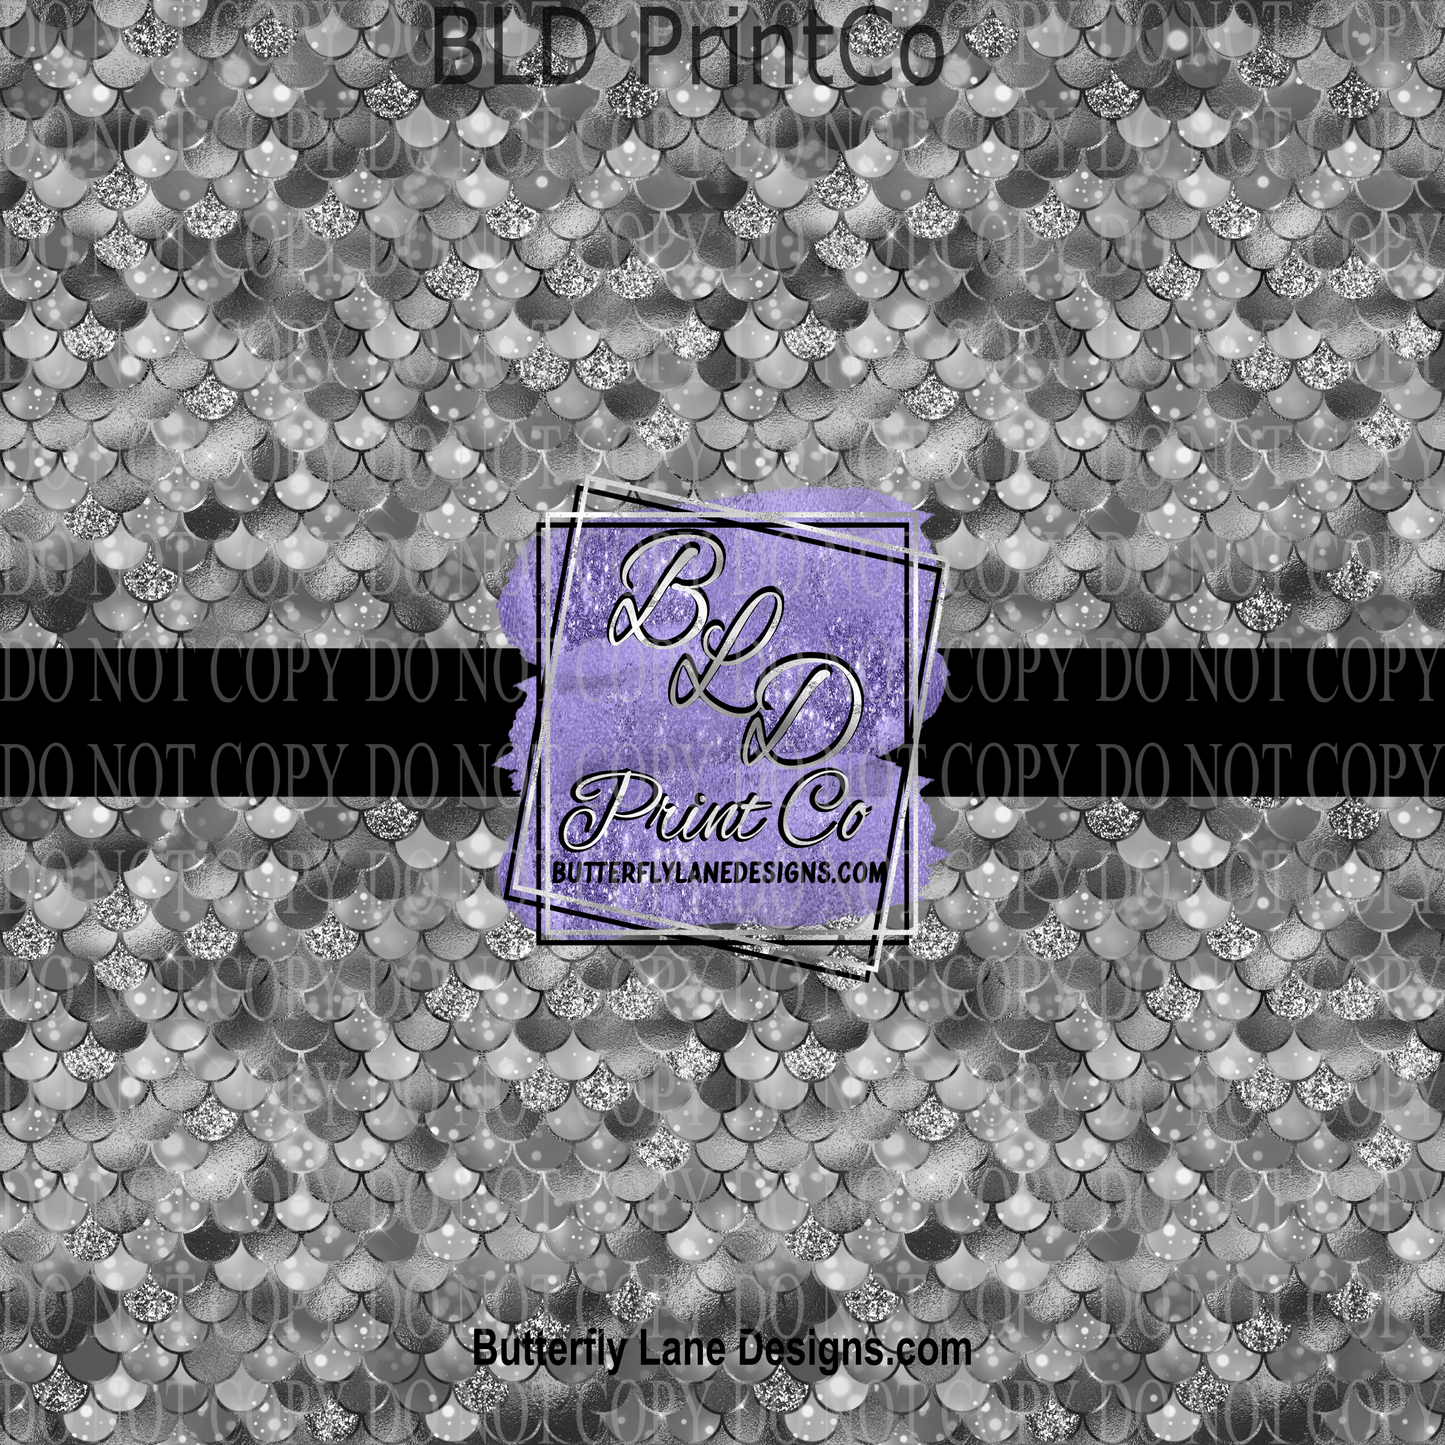 Silver-Black Mermaid scales - PV 760   Patterned Vinyl